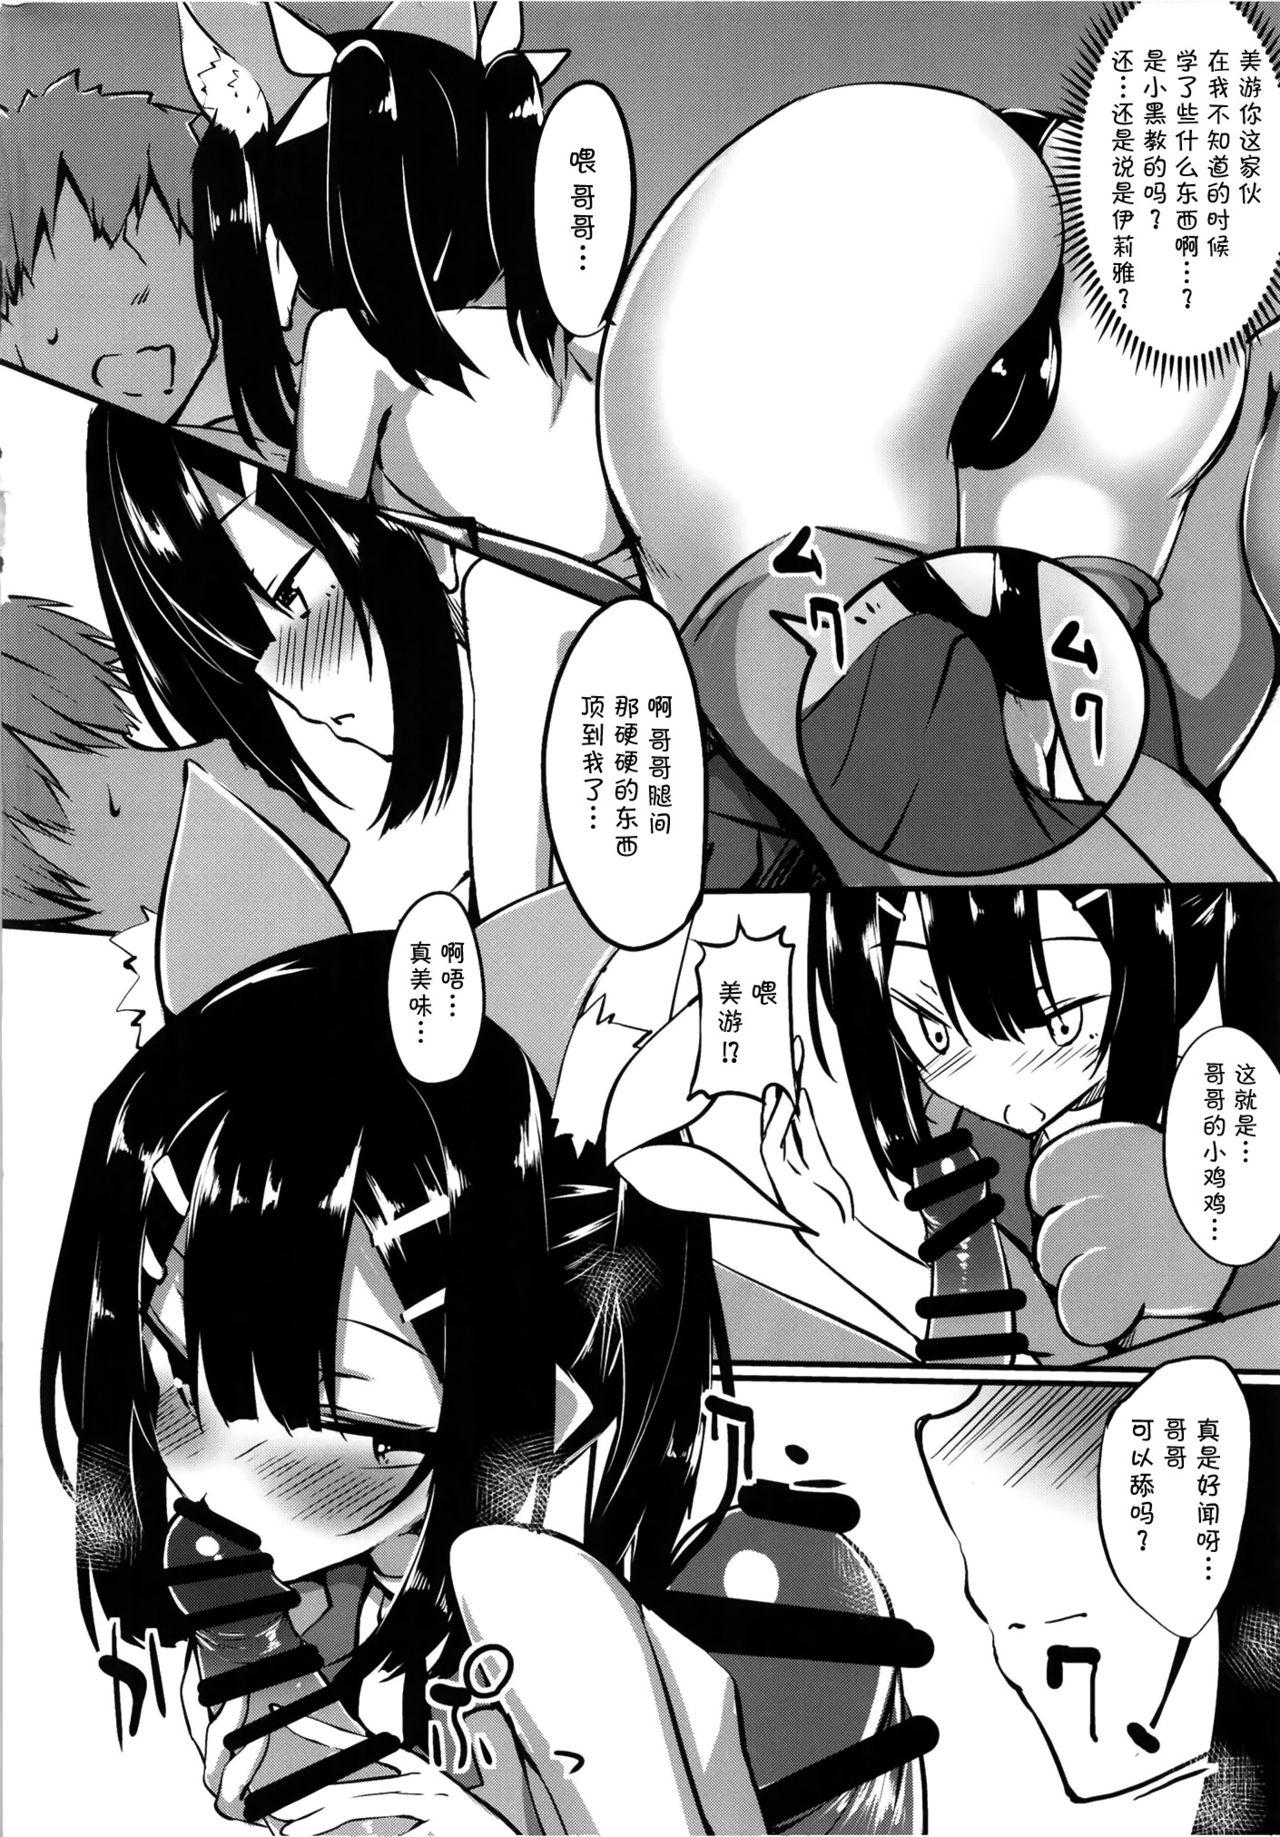 Interracial Porn Miyu-san, Tondemonai Hatsujou o Shite Shimau - Fate kaleid liner prisma illya Nut - Page 5